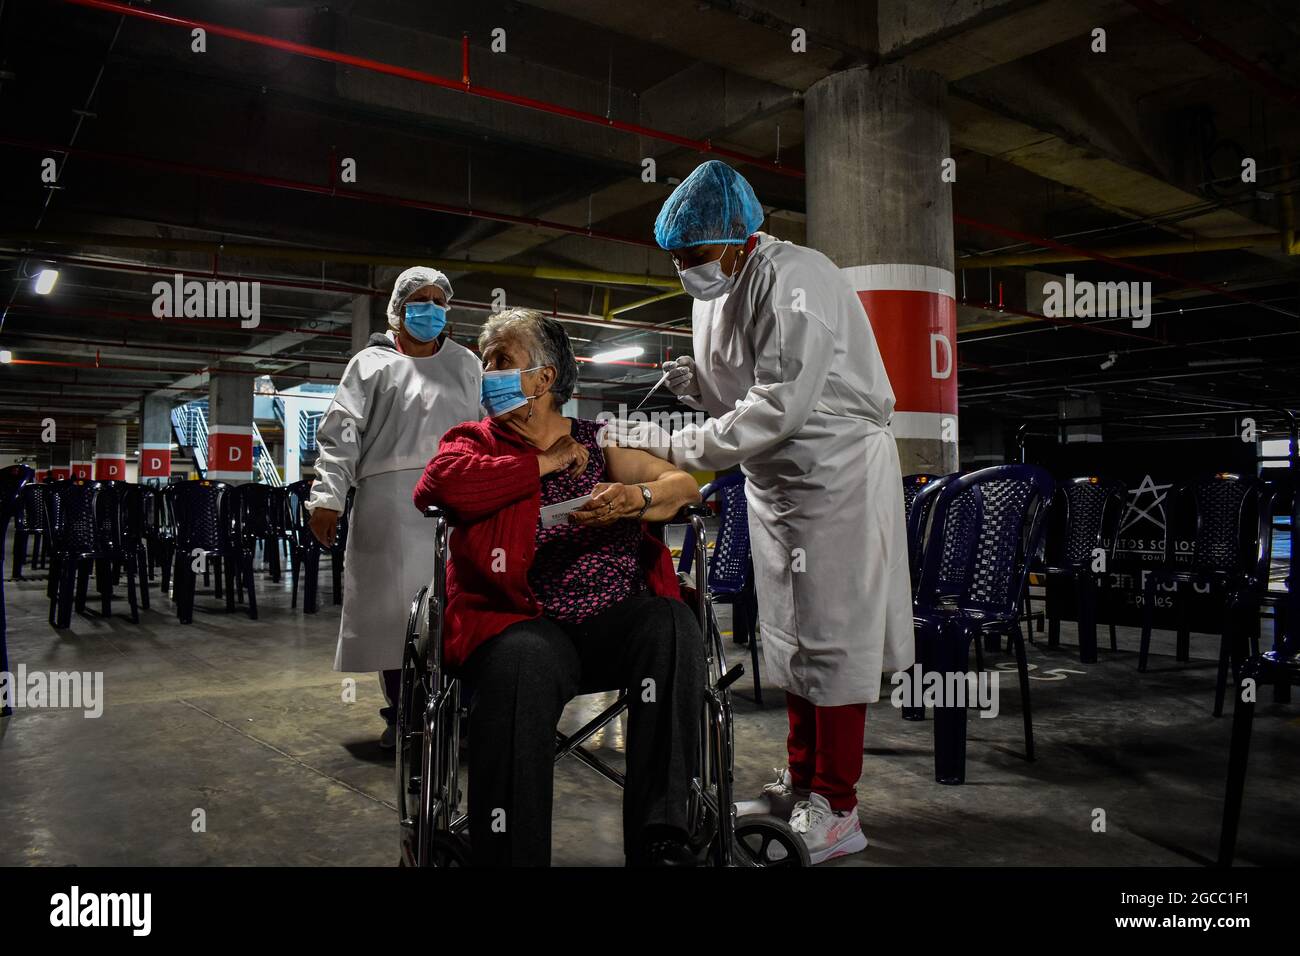 Eine Frau im Rollstuhl erhält eine Dosis des Moderna COVID-19, da Menschen im Alter von 25 bis 30 Jahren am 2. August 2021 in Ipiales - Nariño, Kolumbien, ihre Impfphase mit dem neuartigen Impfstoff COVID-19 von Moderna gegen die Coronavirus-Krankheit beginnen. Stockfoto